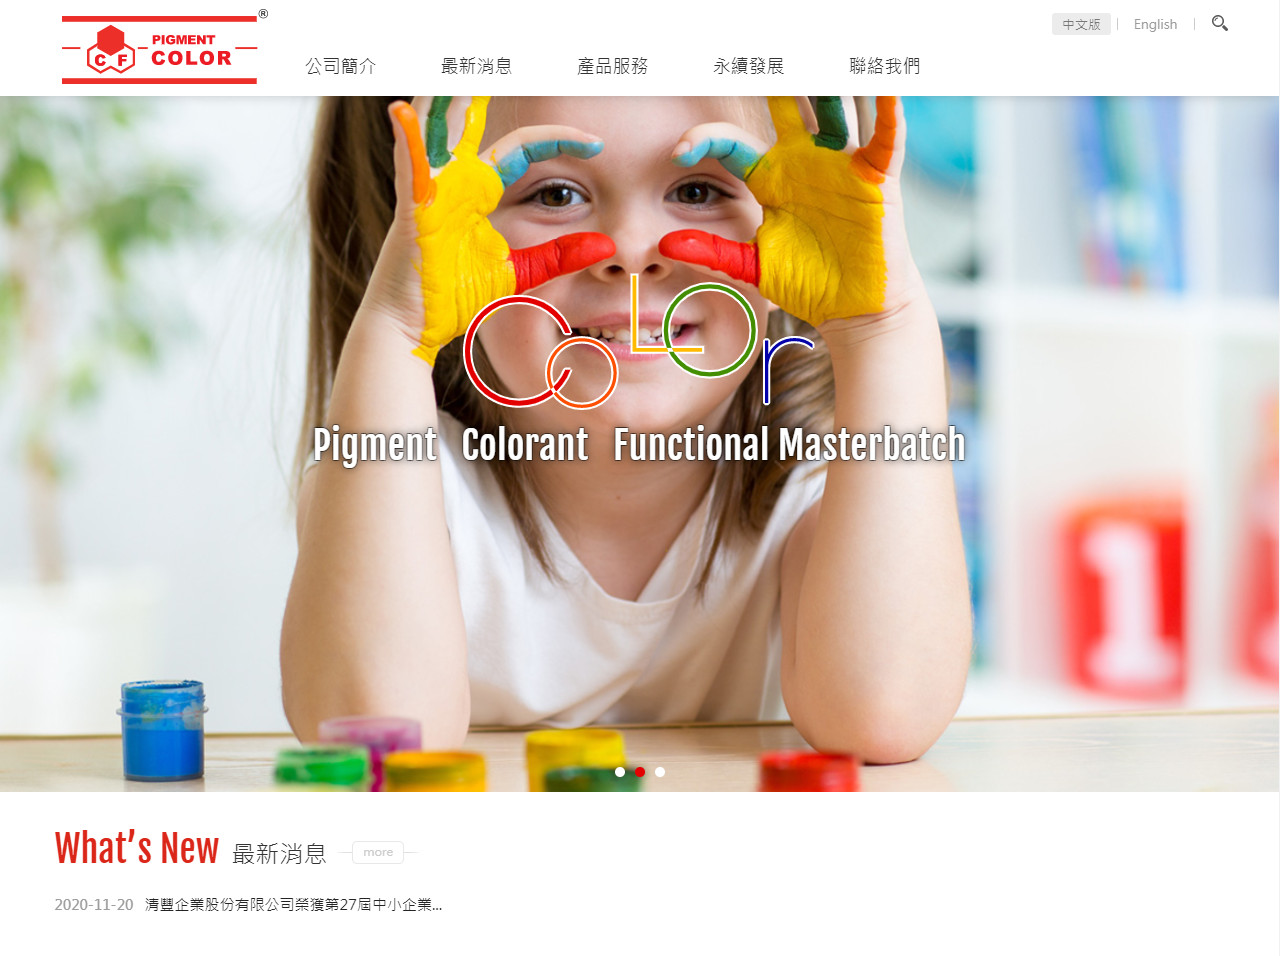 清豐集團 響應式RWD公司網站設計
網站設計